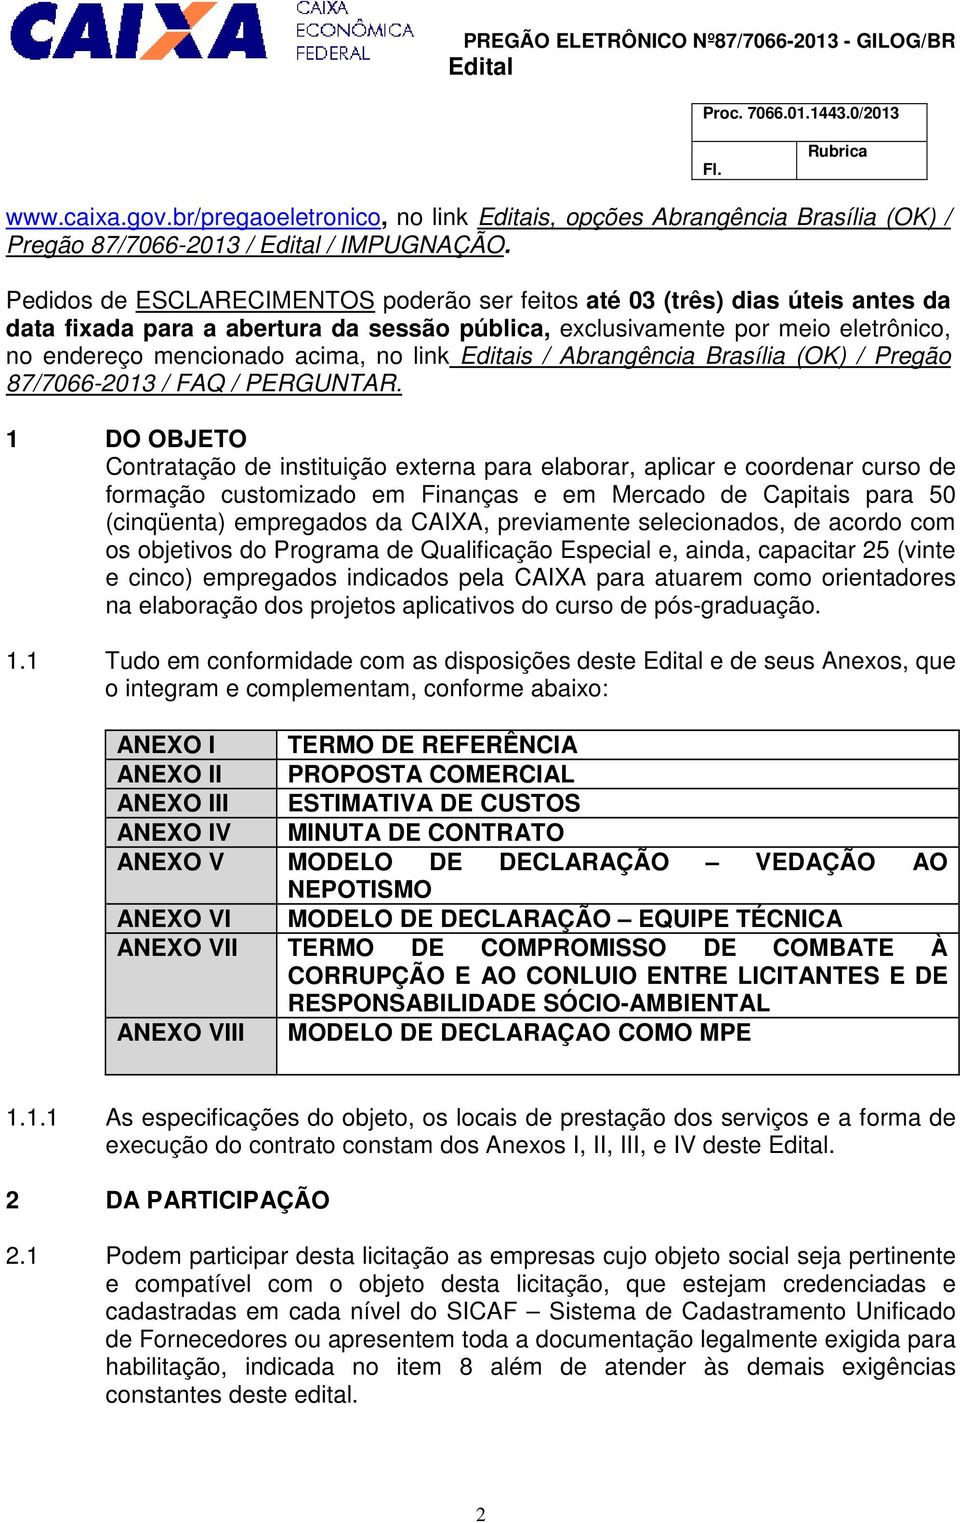 link Editais / Abrangência Brasília (OK) / Pregão 87/7066-2013 / FAQ / PERGUNTAR.